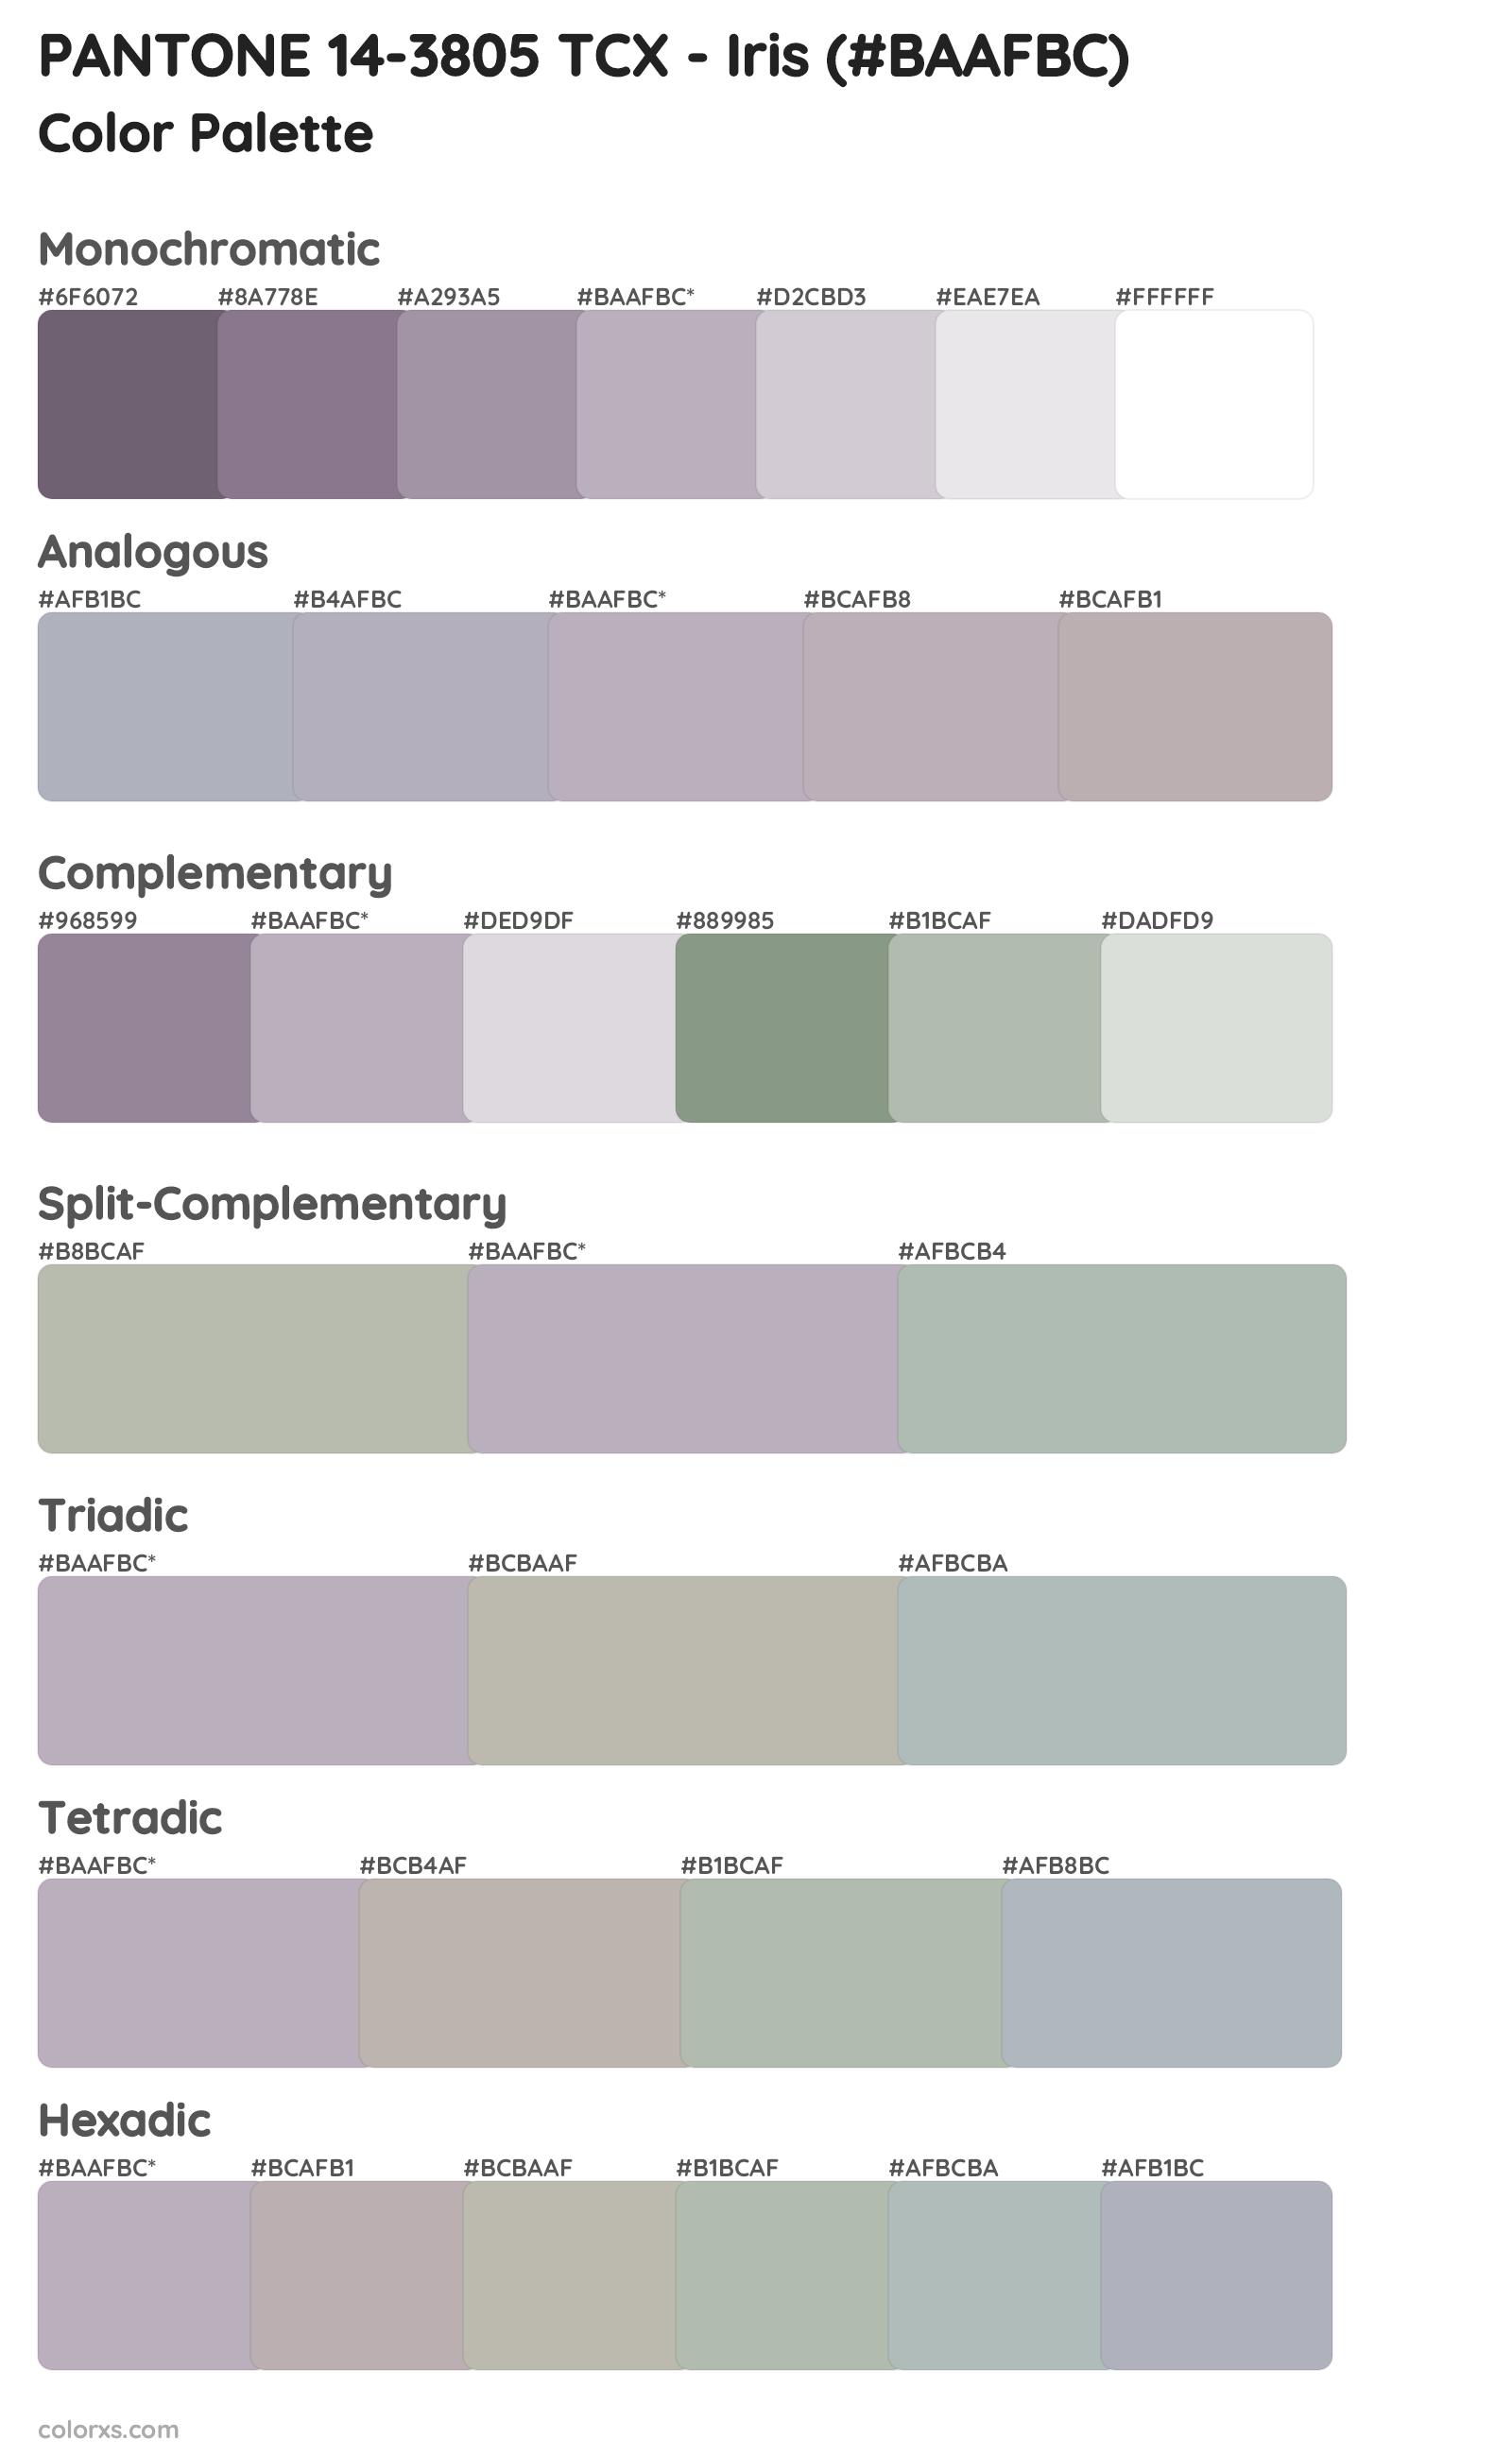 PANTONE 14-3805 TCX - Iris Color Scheme Palettes